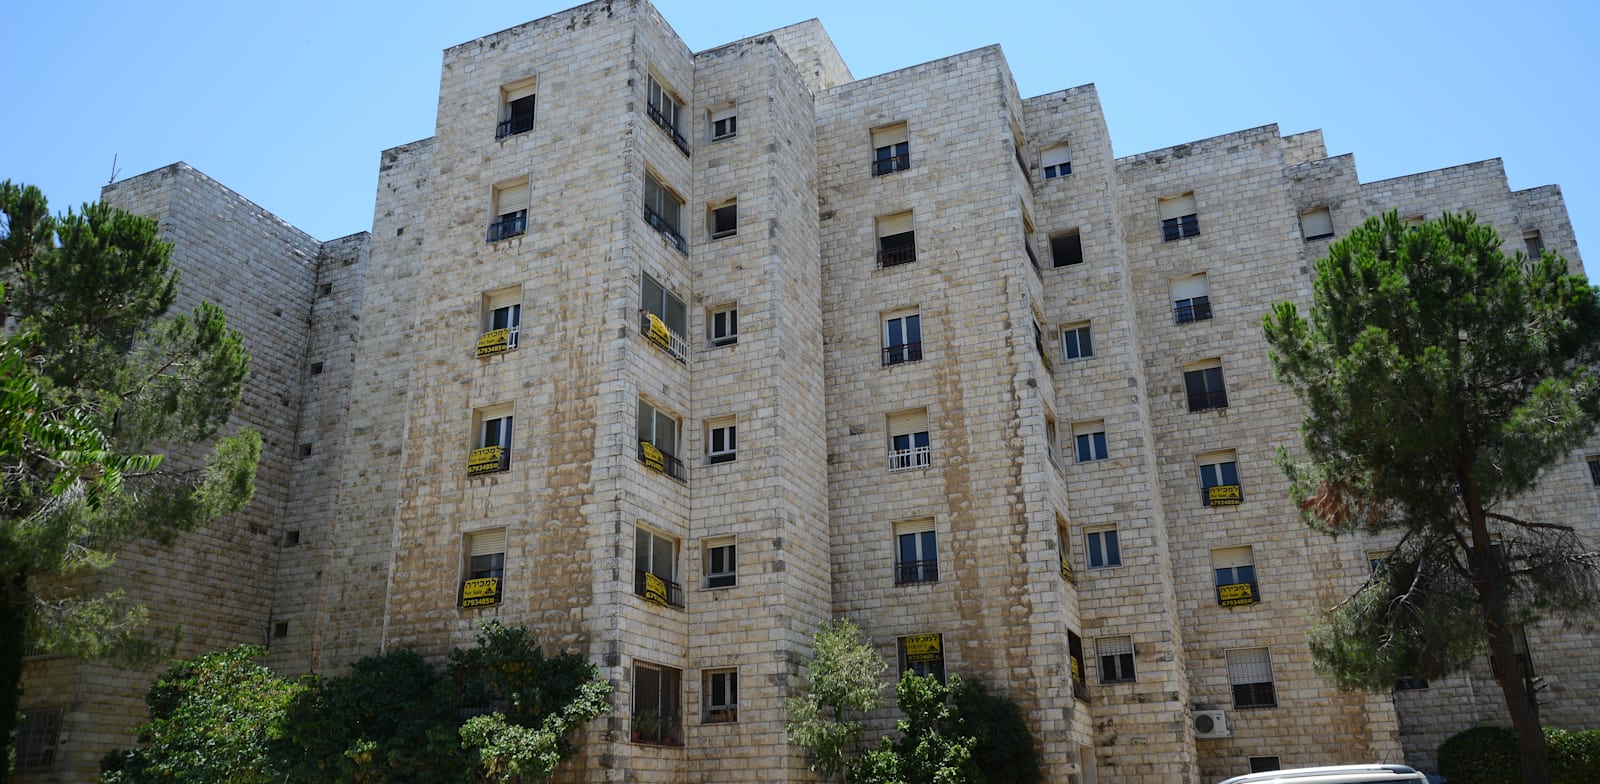 דירות למכירה בירושלים / צילום: איל יצהר